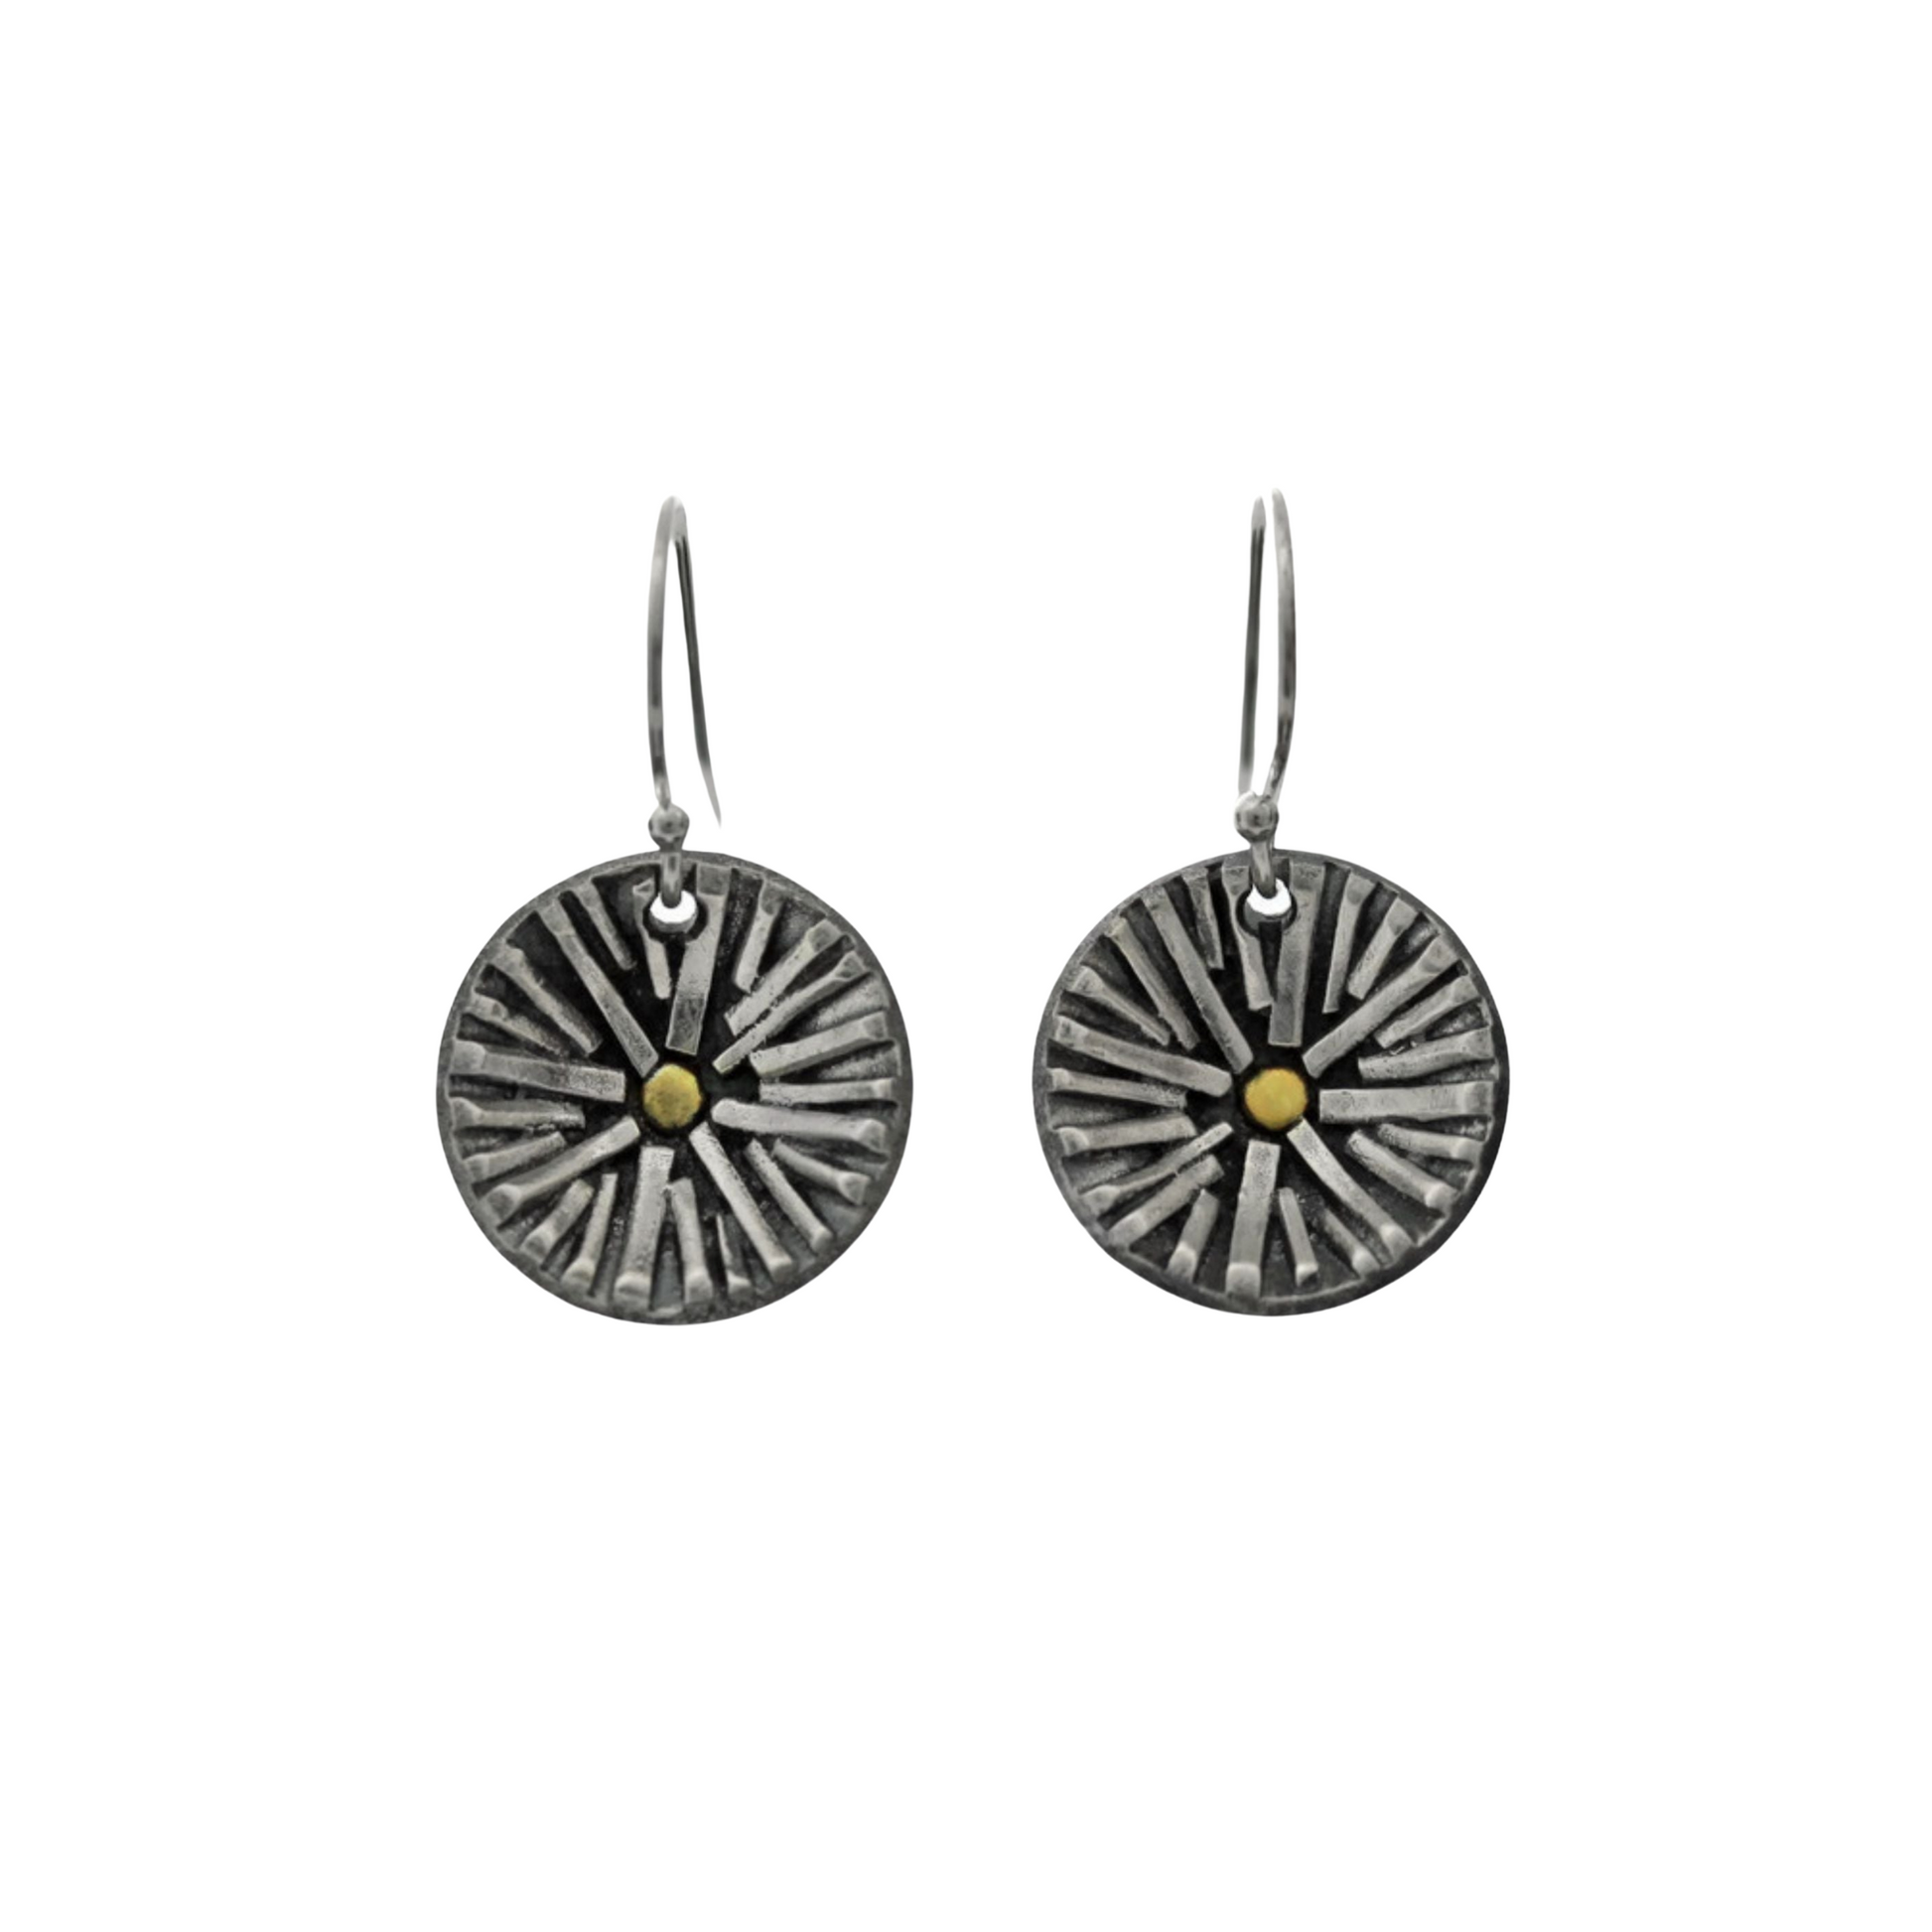 Radiance earrings Jen Lesea Designs